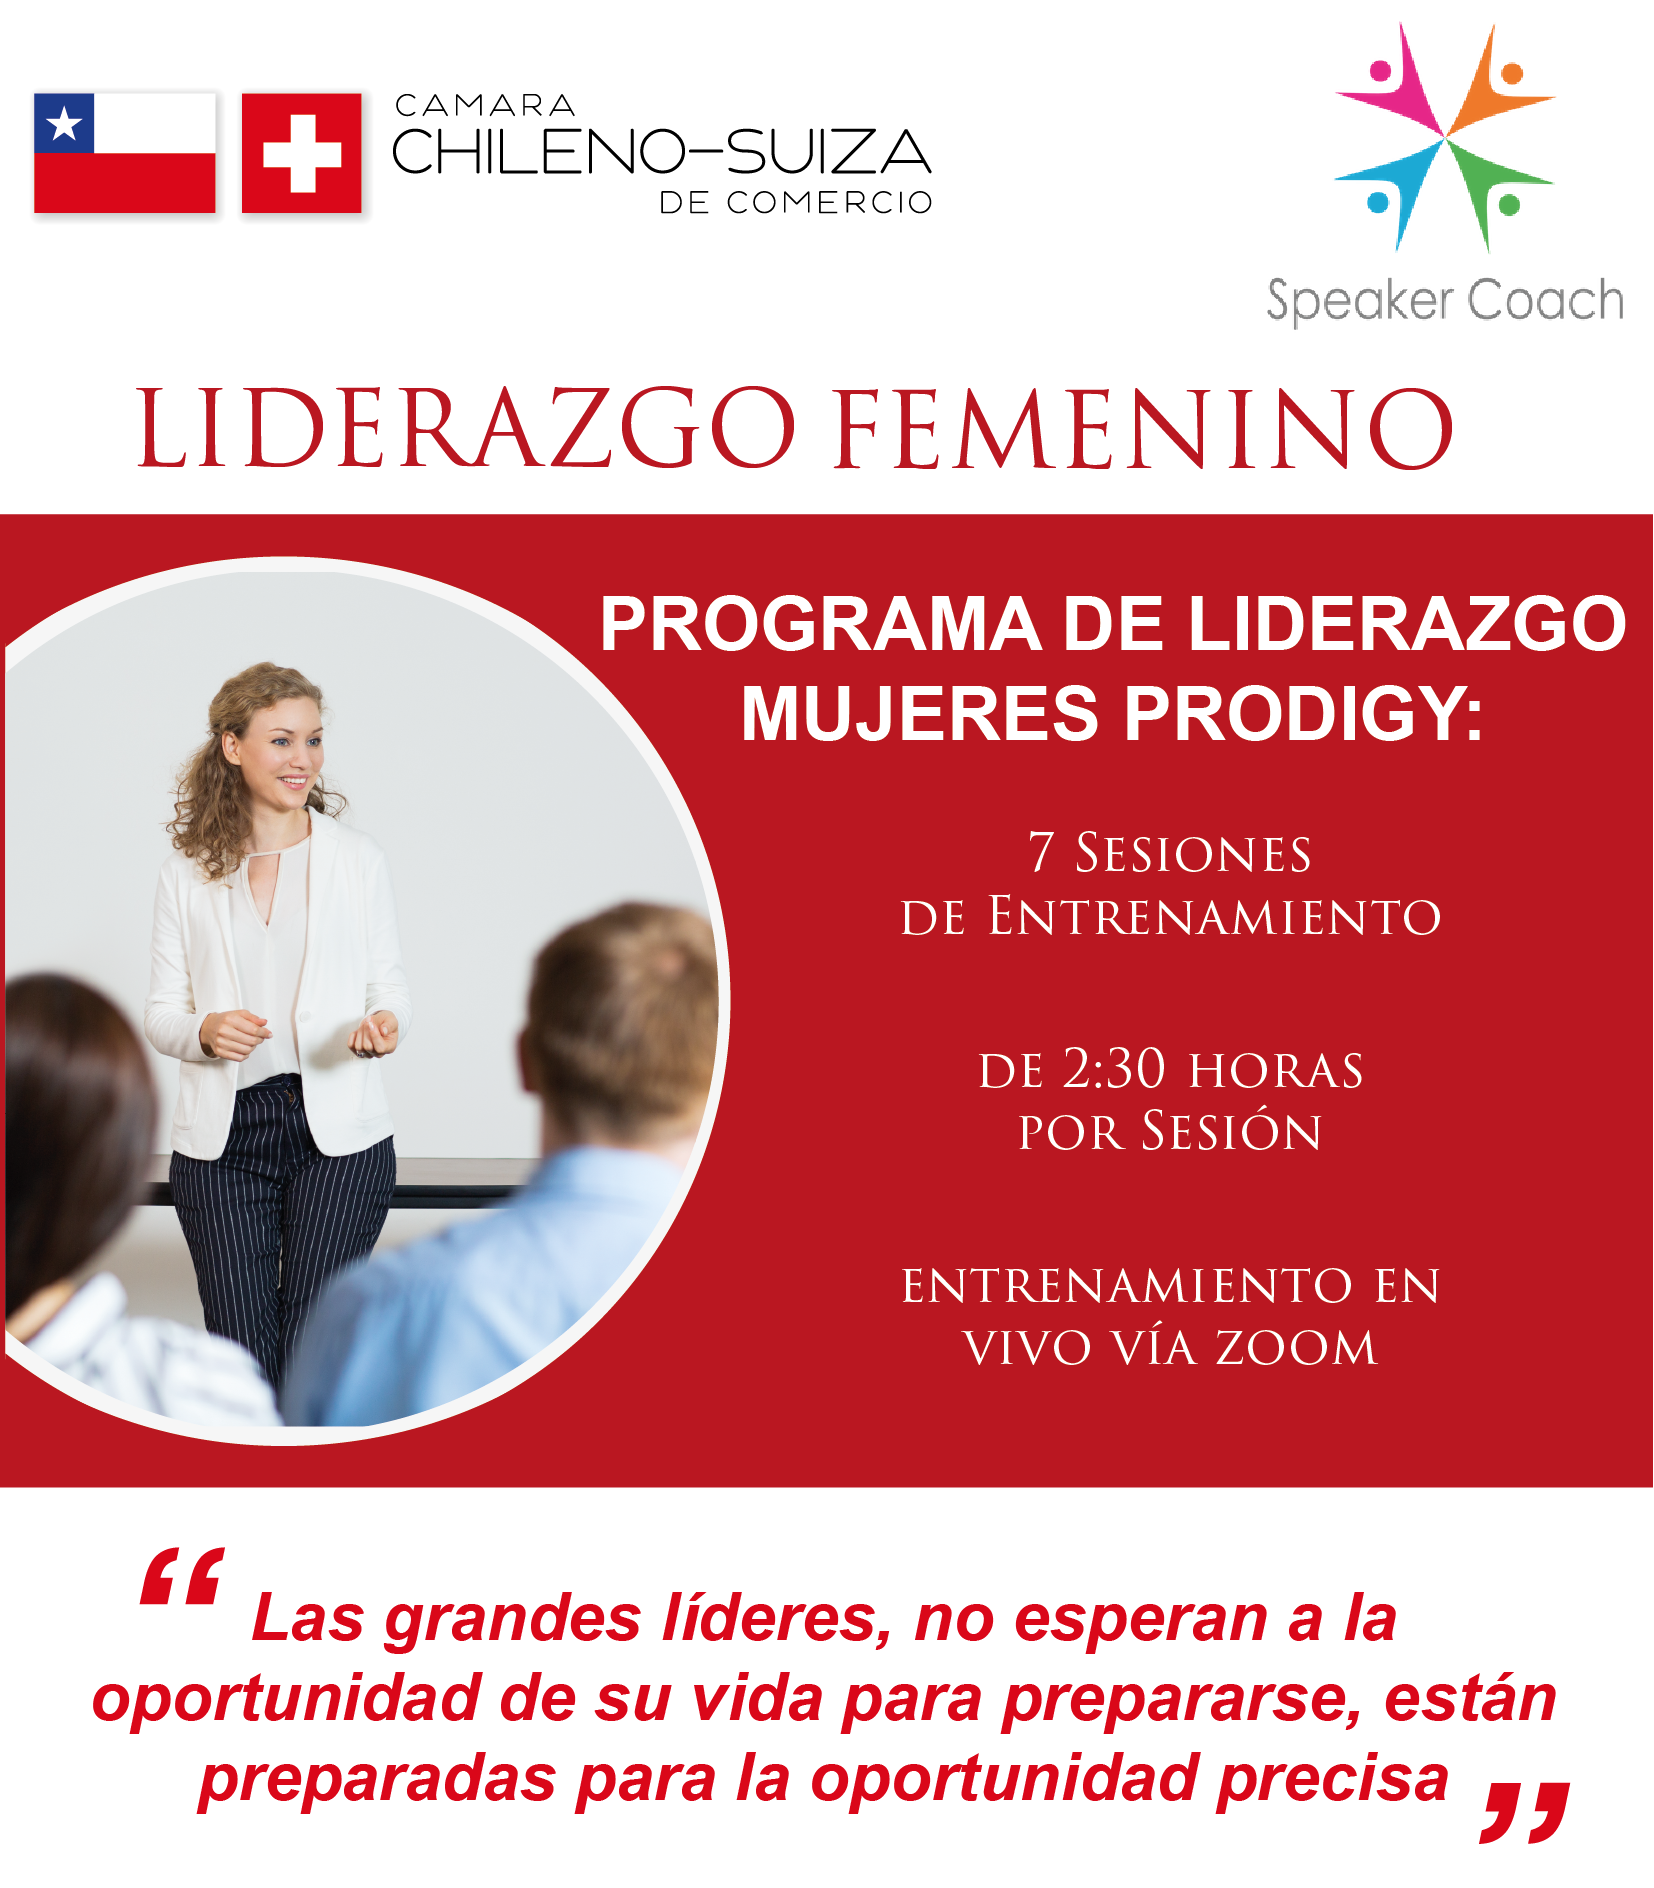 Programa de entrenamiento de Liderazgo Femenino 2020 - Cámara Chileno Suiza de Comercio